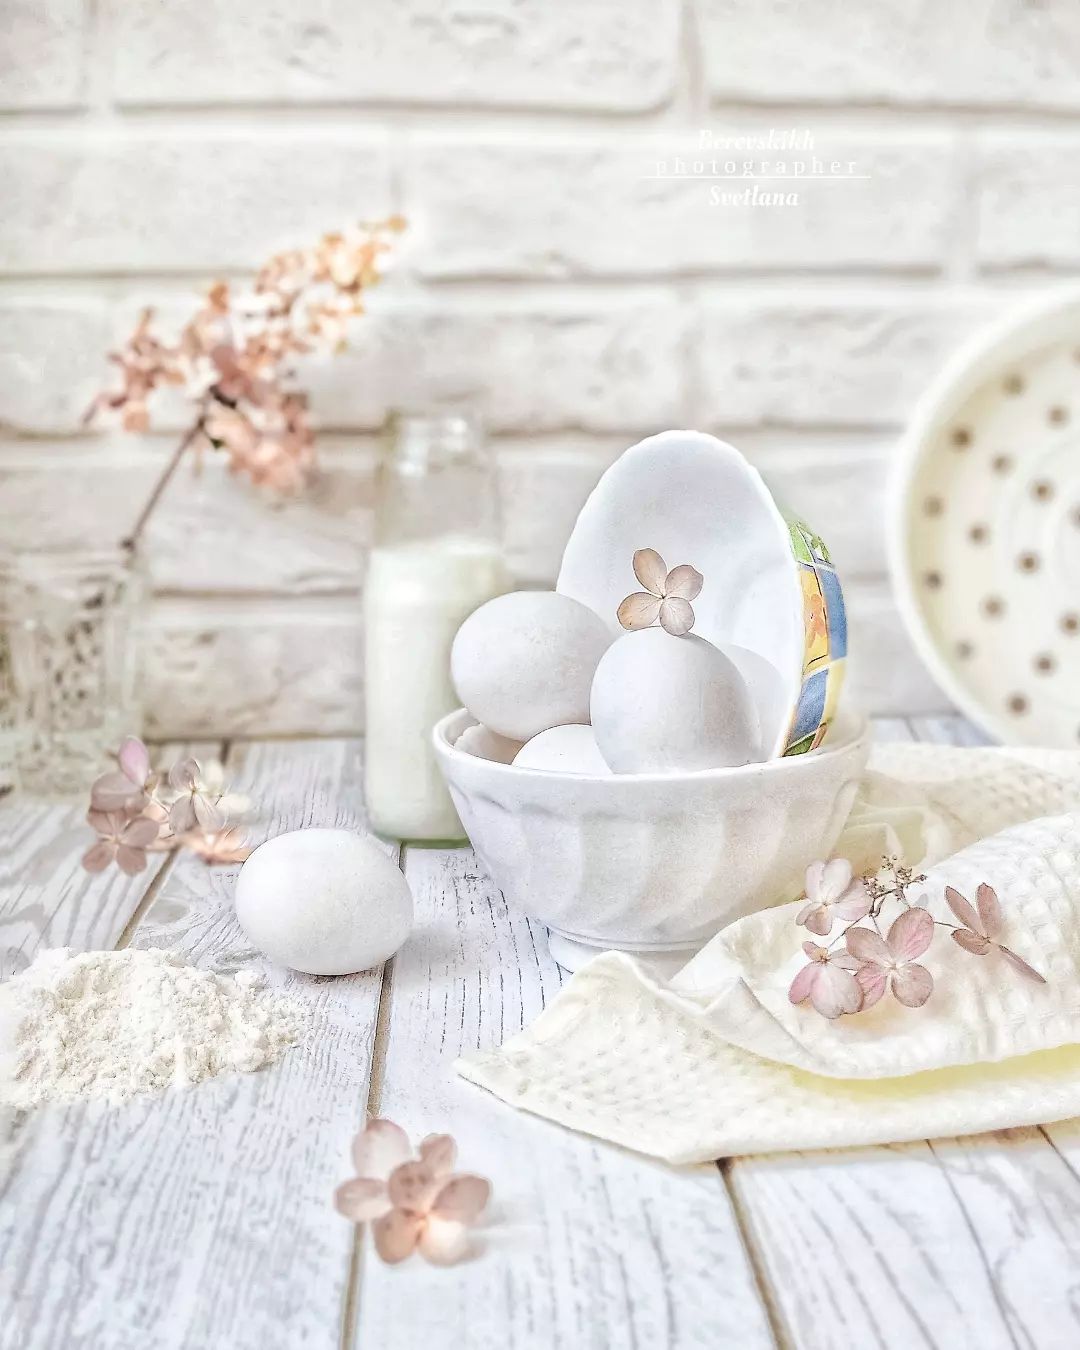 натюрморт, белый цвет, высокий ключ, кухня, яйцо, мука, фото на телефон, Светлана Боровских